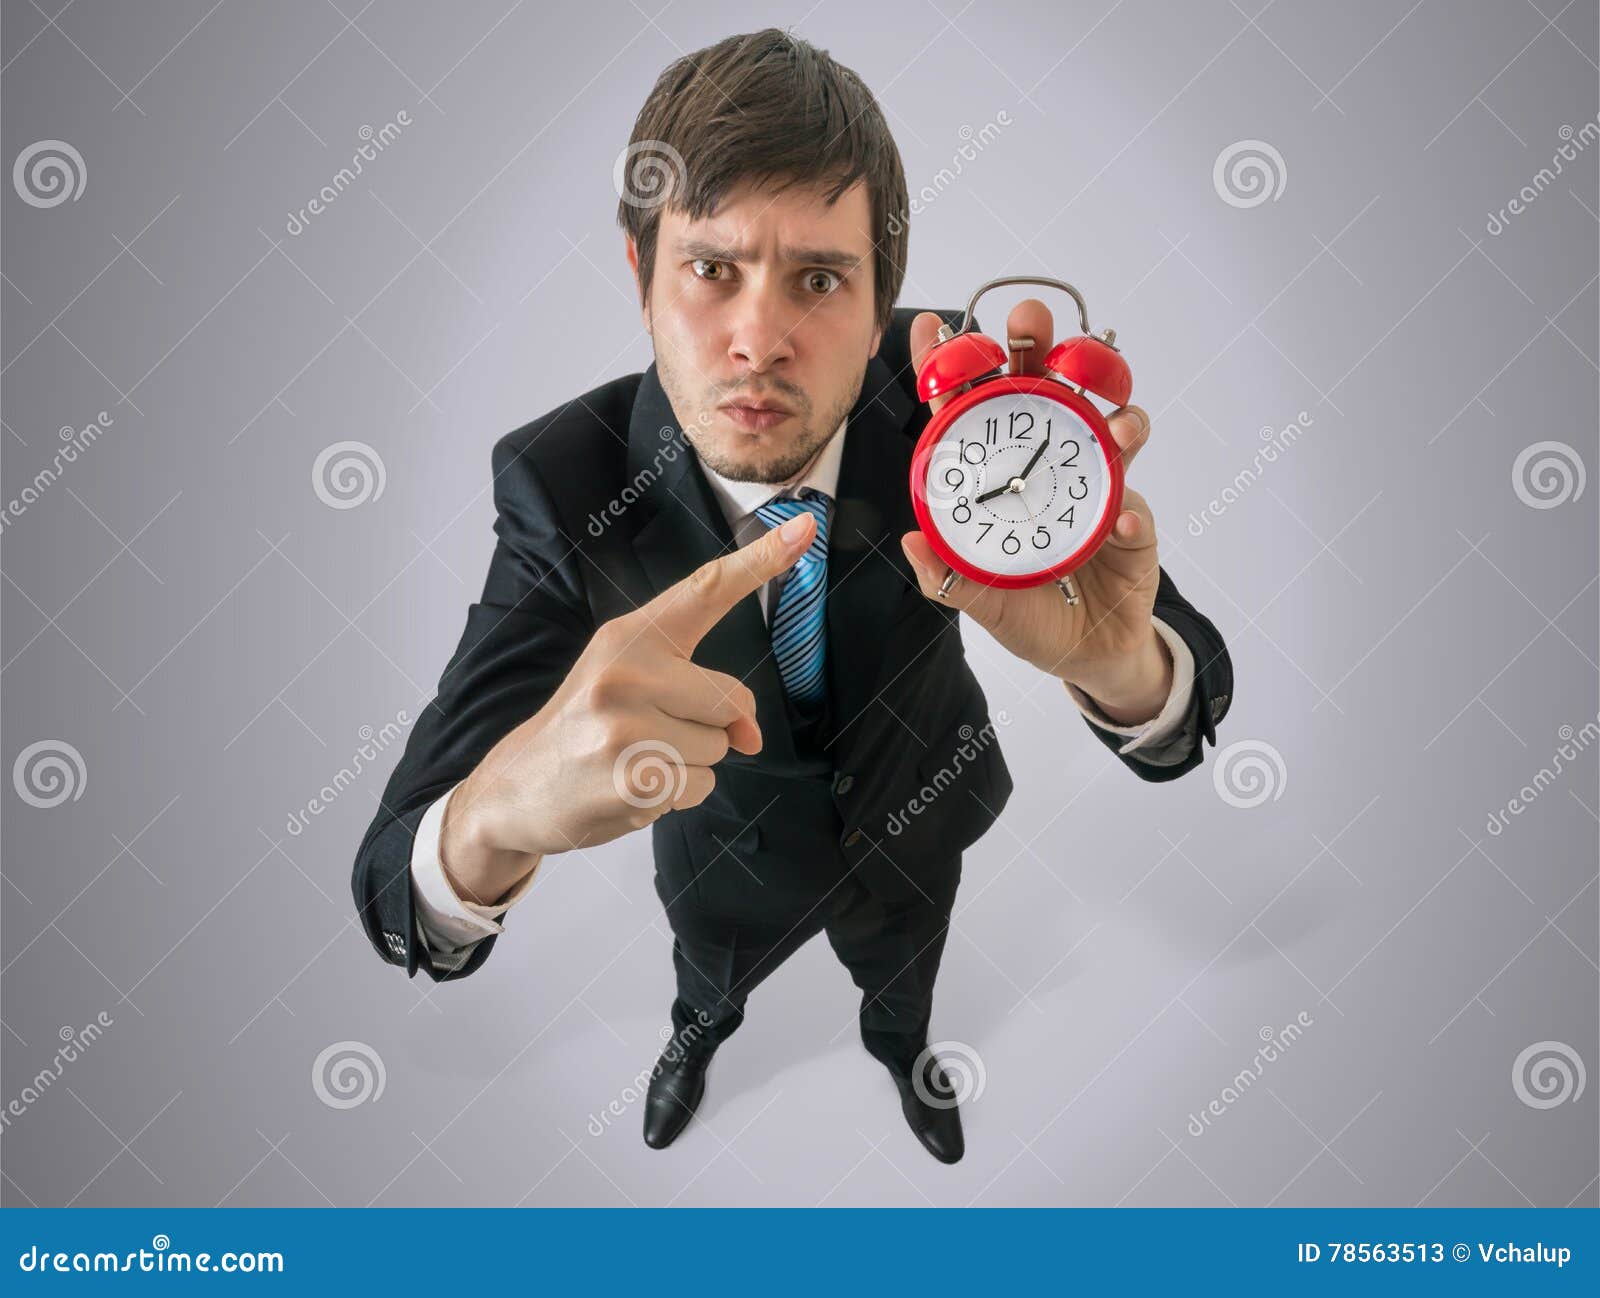 Постоянно смотрю на часы. Человек показывает на часы. Человек указывает на часы. Мужчина указывает на часы. Чел показывает на часы.